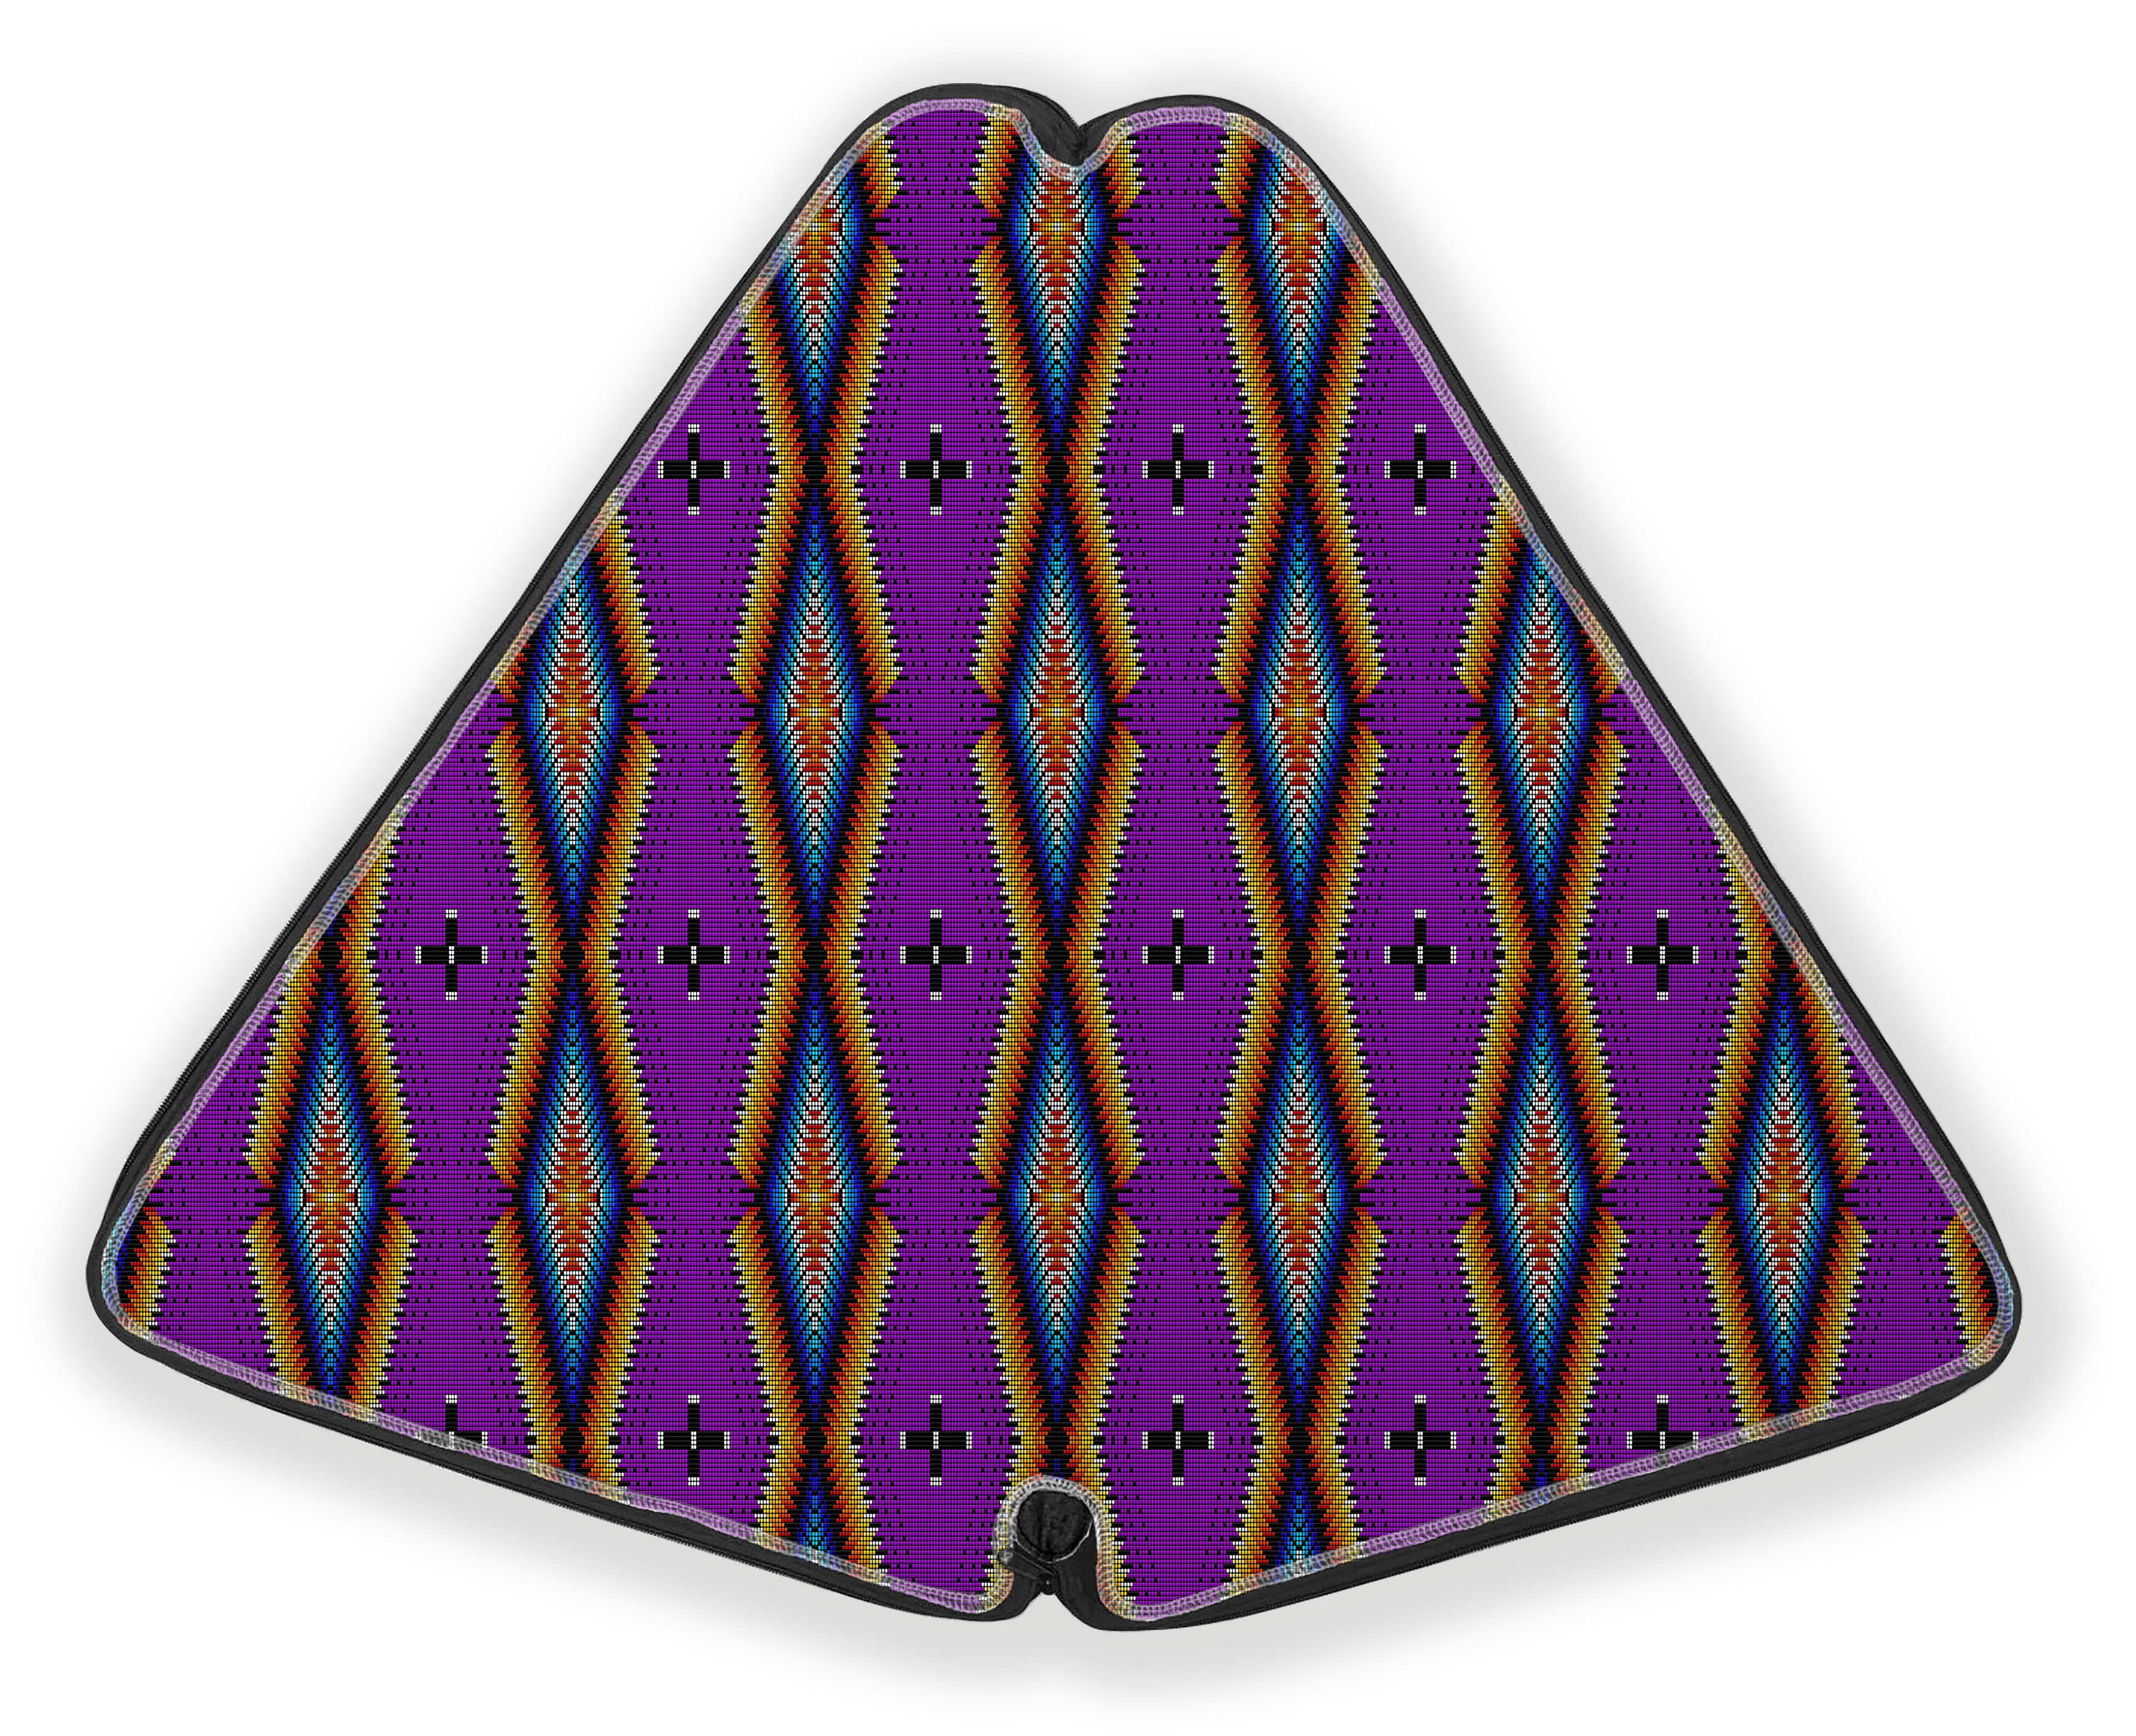 27 Inch Fan Case - Diamond in the Bluff Purple